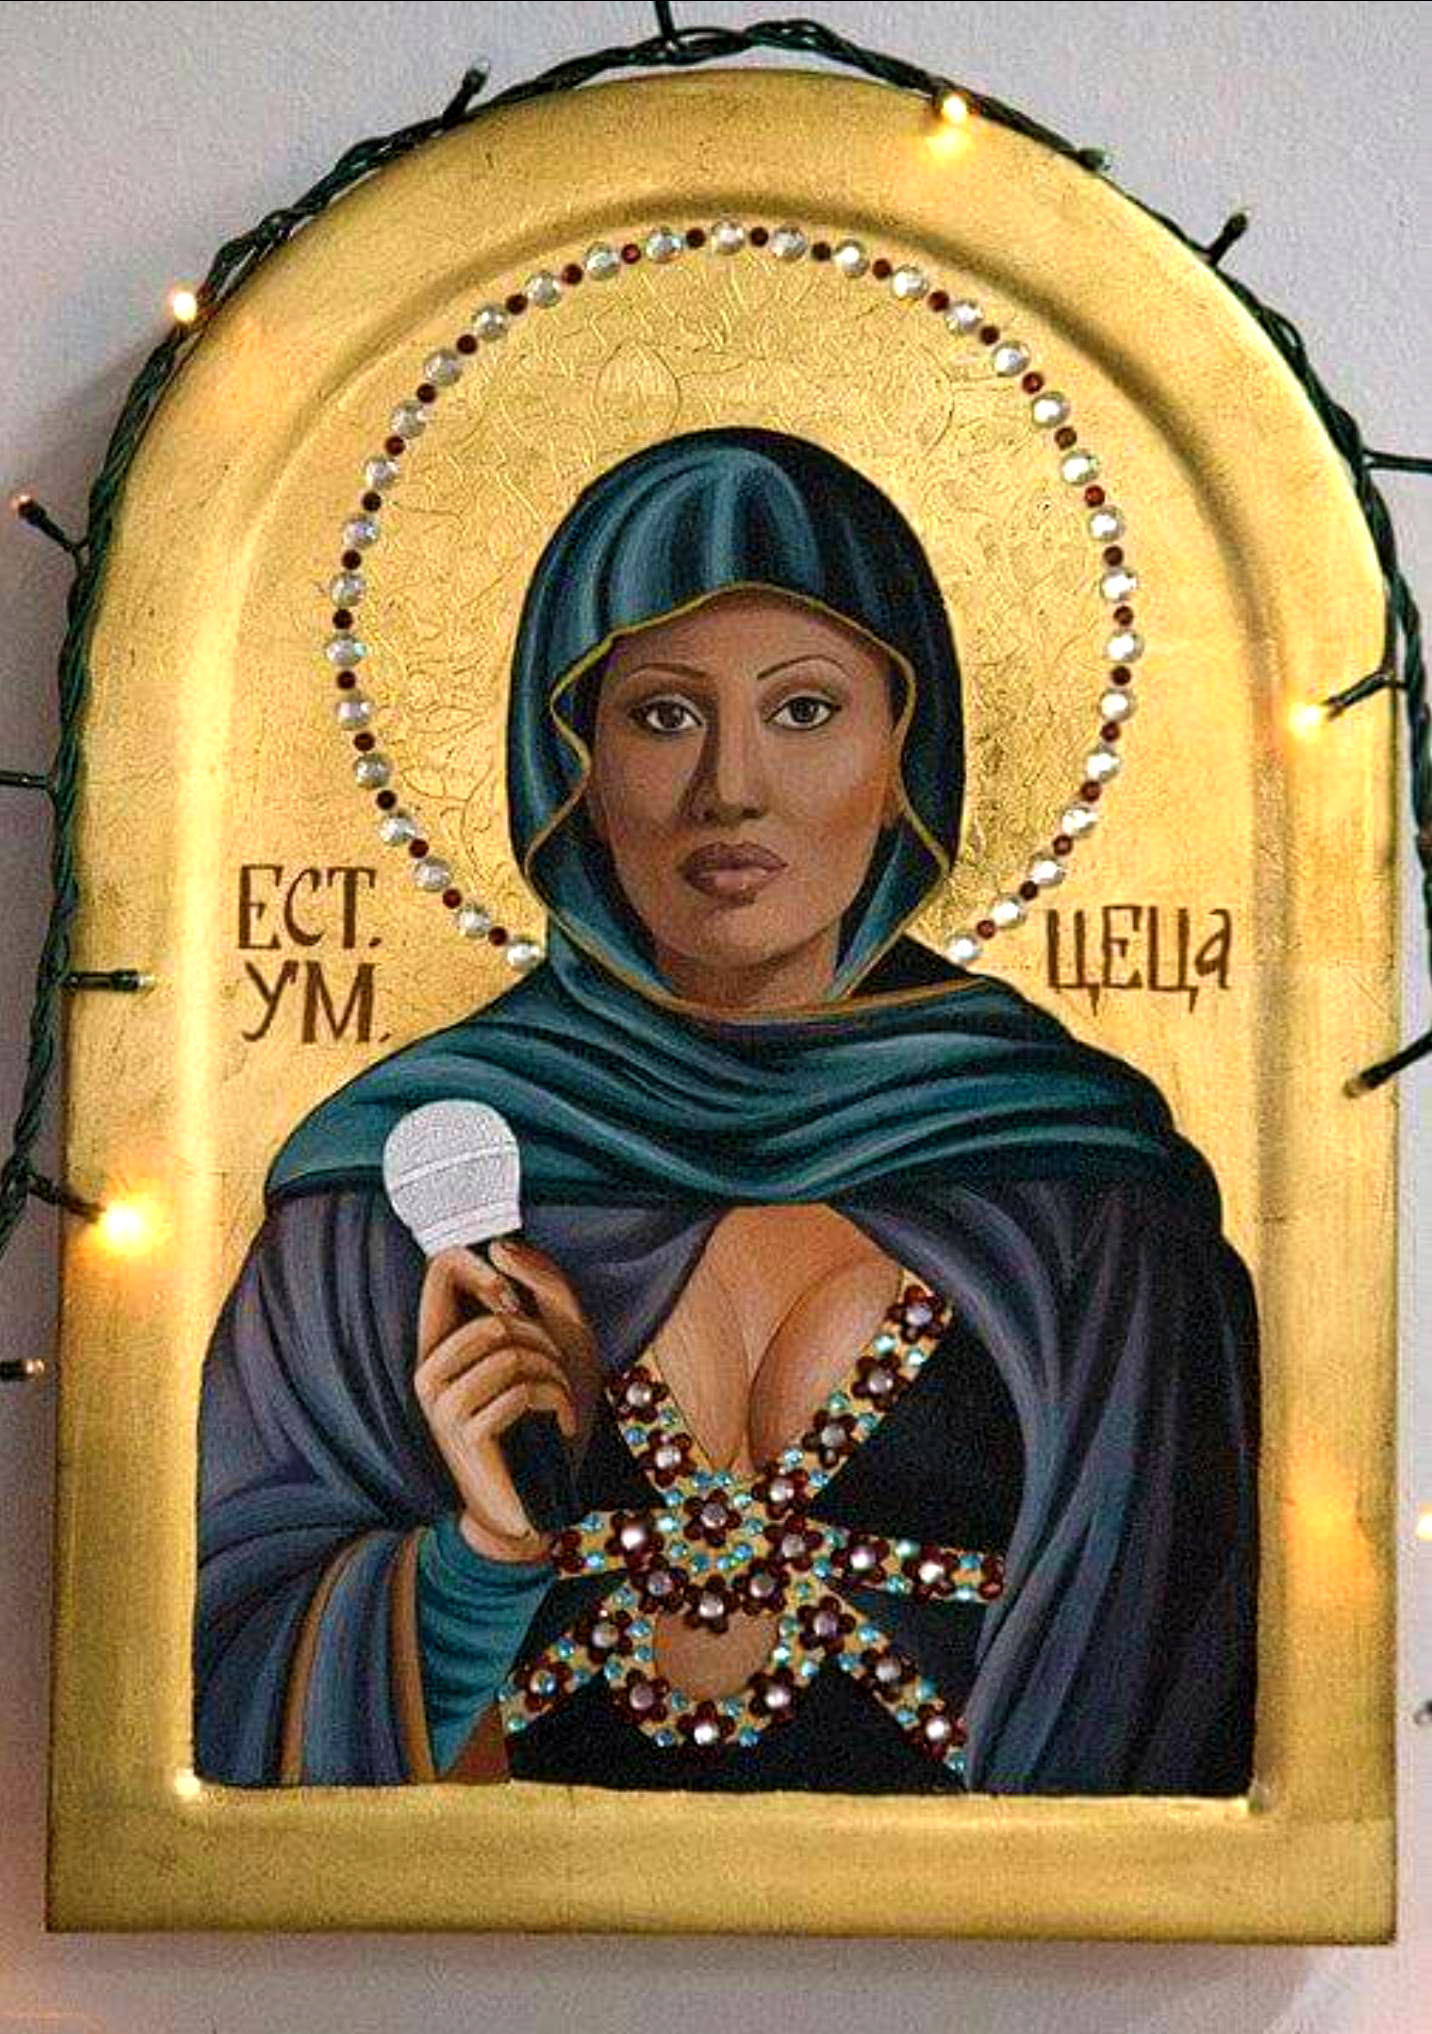 Fig.29 Turbo-folk icon Ceca as an Orthodox Icon by Vladislava Dzhurich